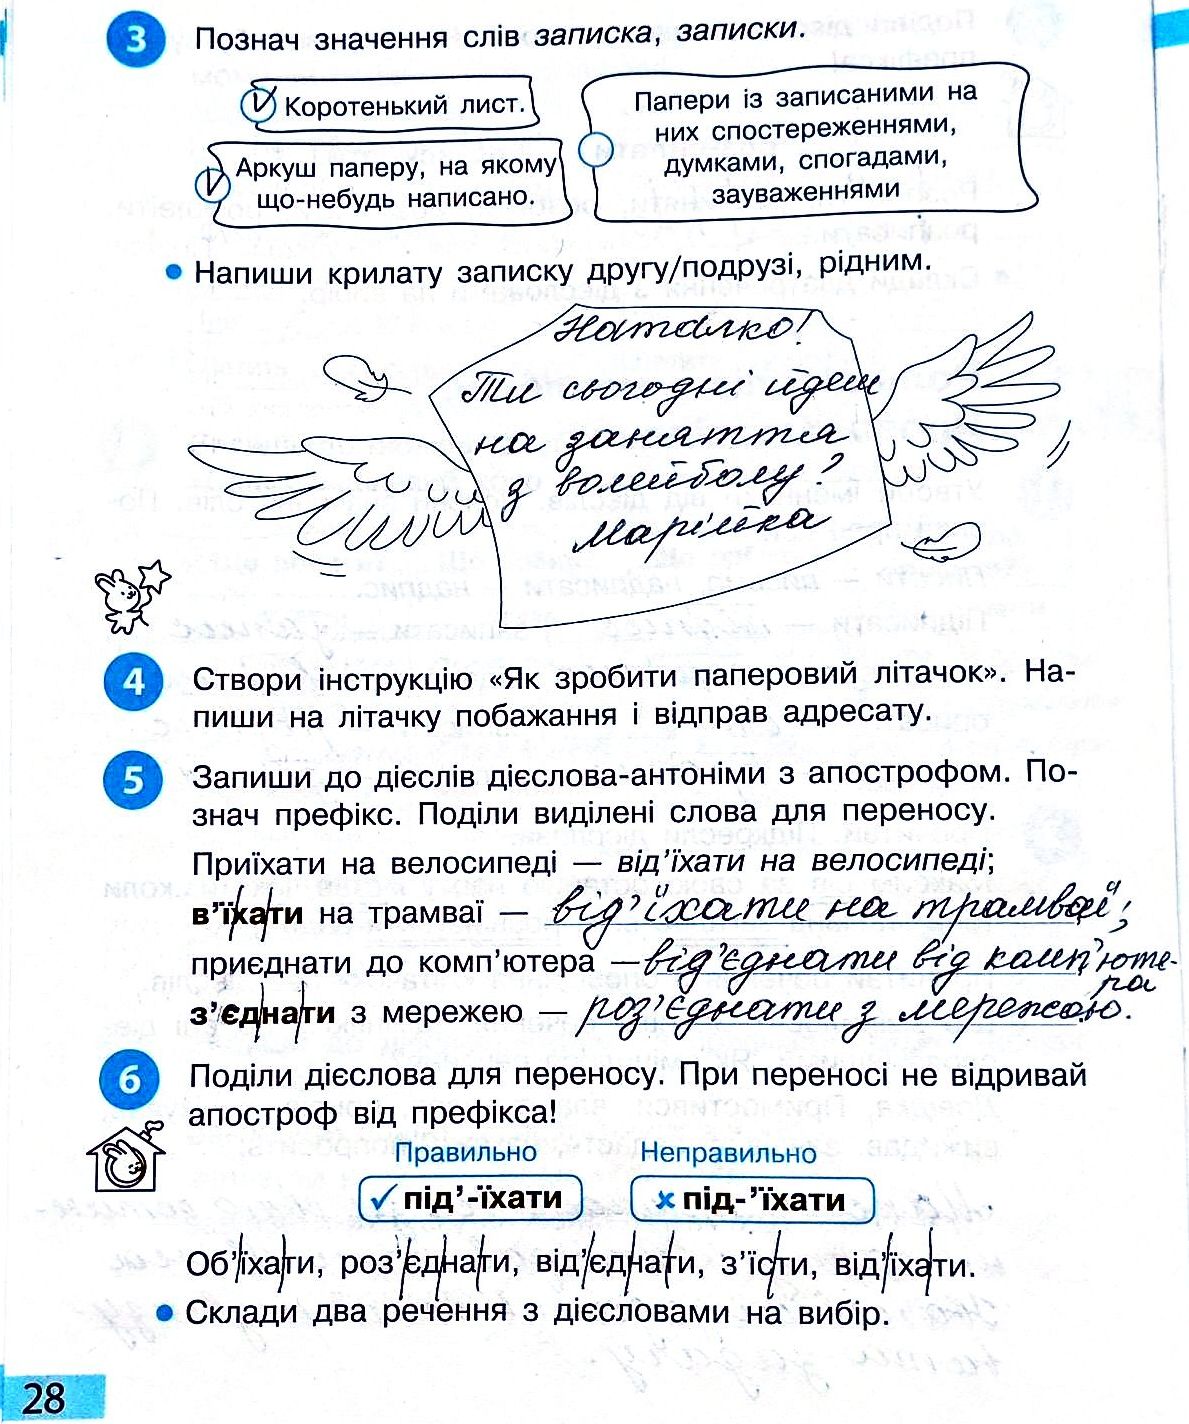 Сторінка 28 частина 2 гдз 3 клас робочий зошит українська мова Большакова